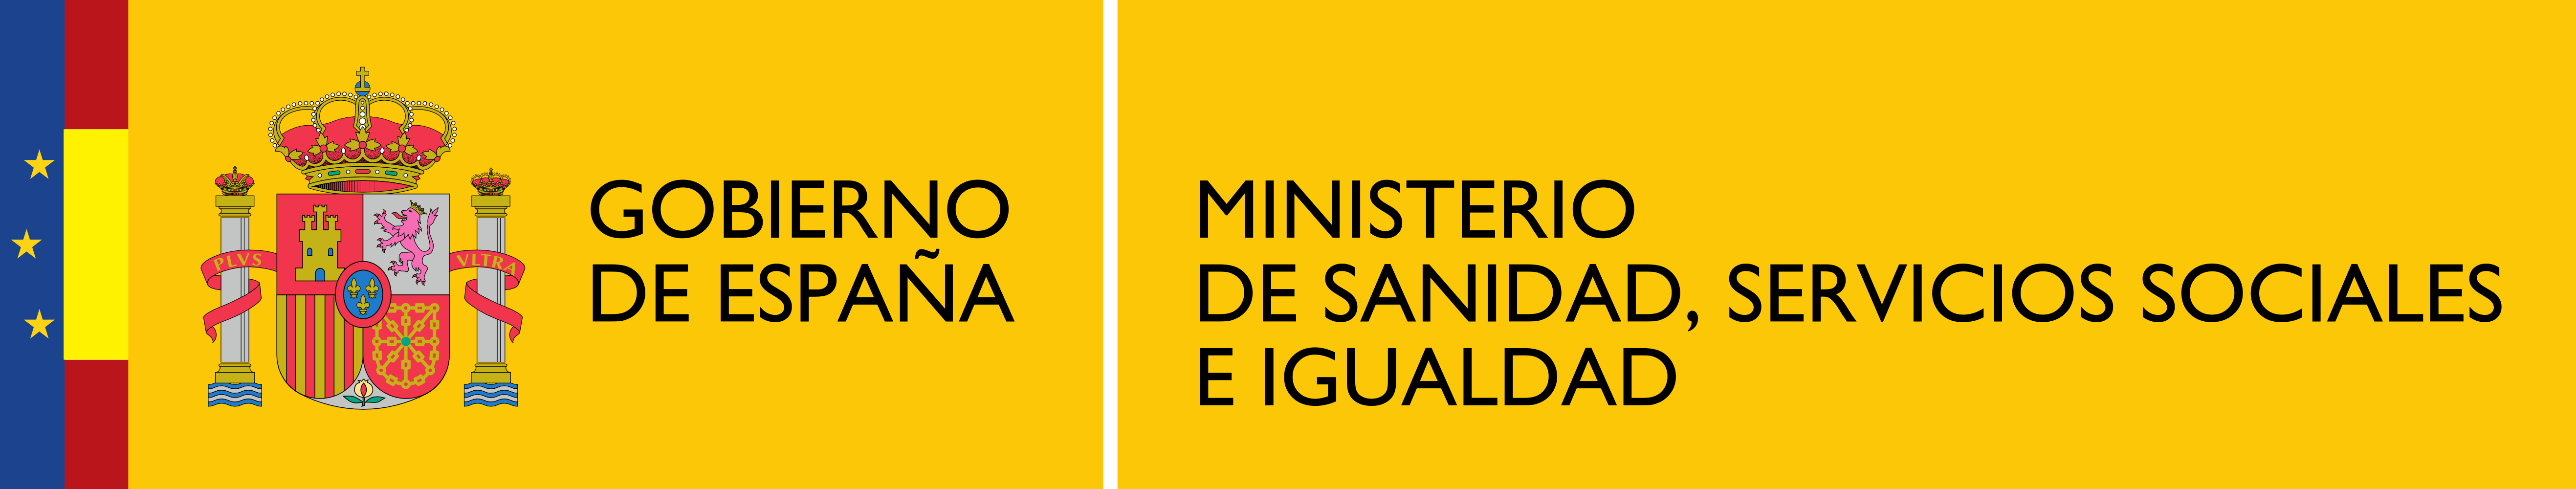 Resultado de imagen de ministerio de sanidad logo